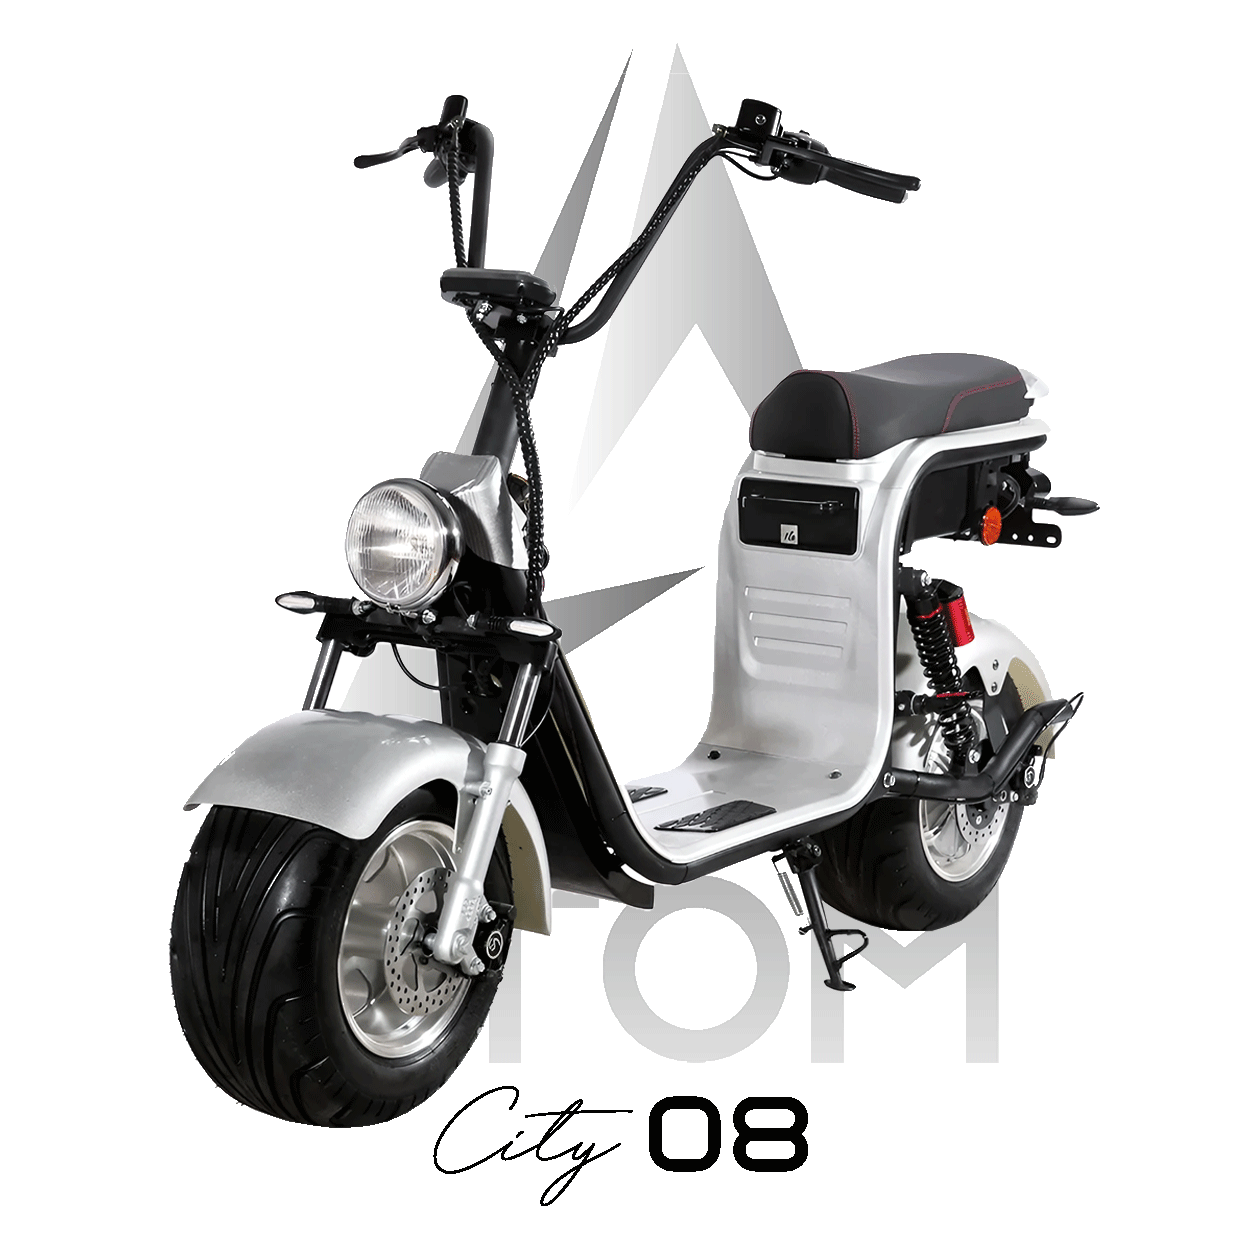 Scooter électrique, Atom City 08 | 2000 W | 50 cc | V-max 45 km/h | Autonomie 60 km - Atom Motors